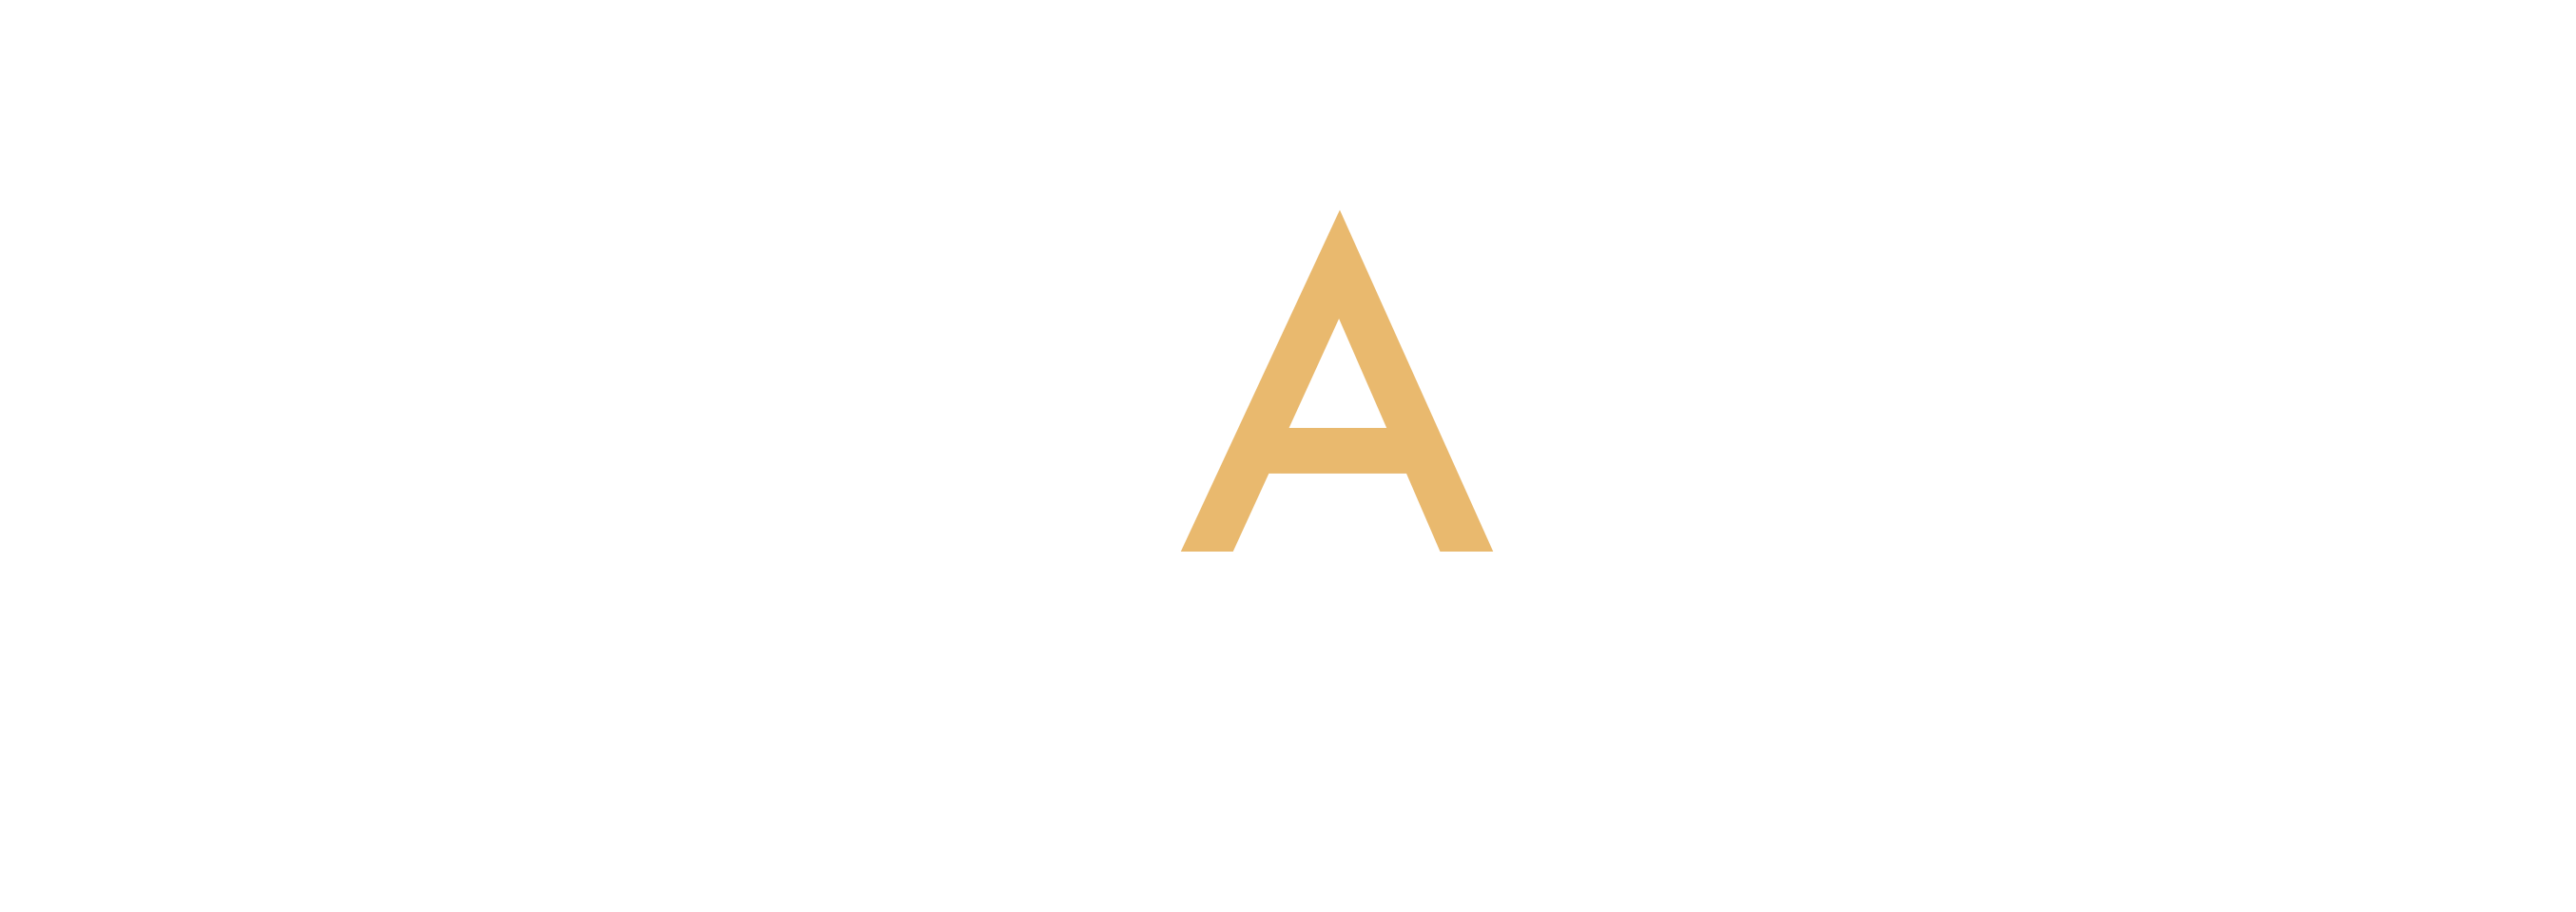 ZA Consulting